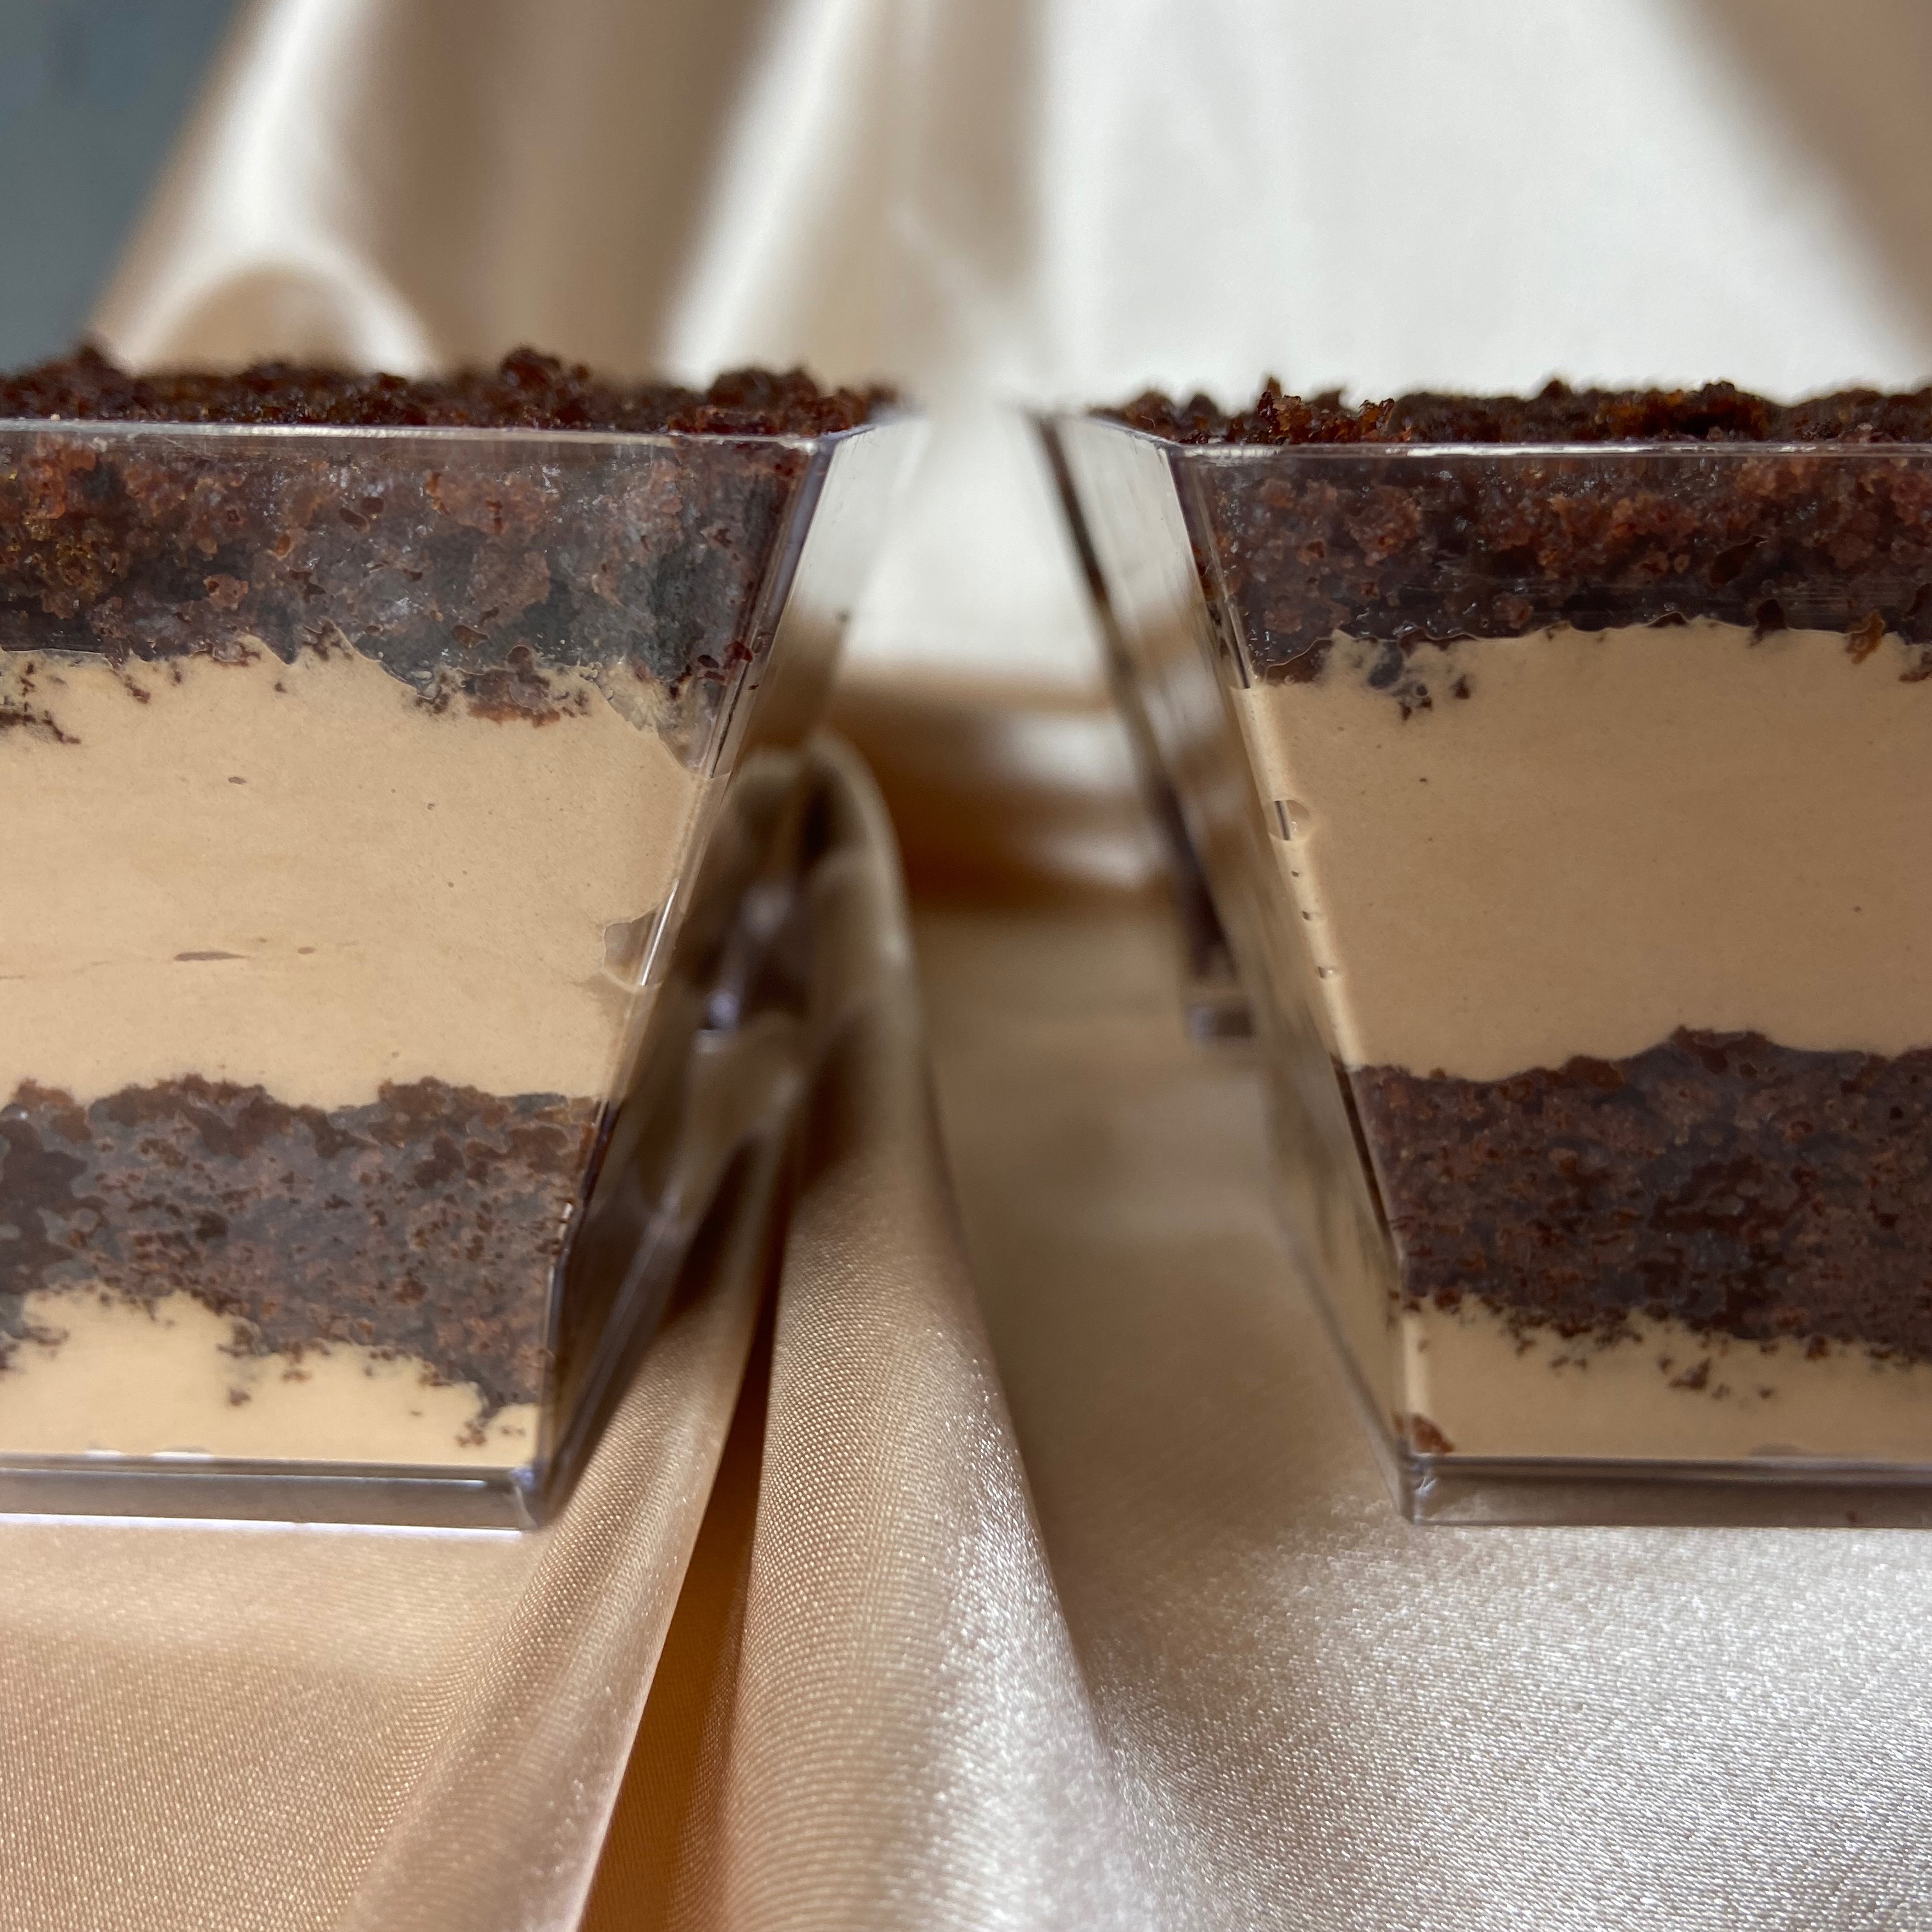 Шоколадный крем для торта капкейков. Шоколадный крем-чиз